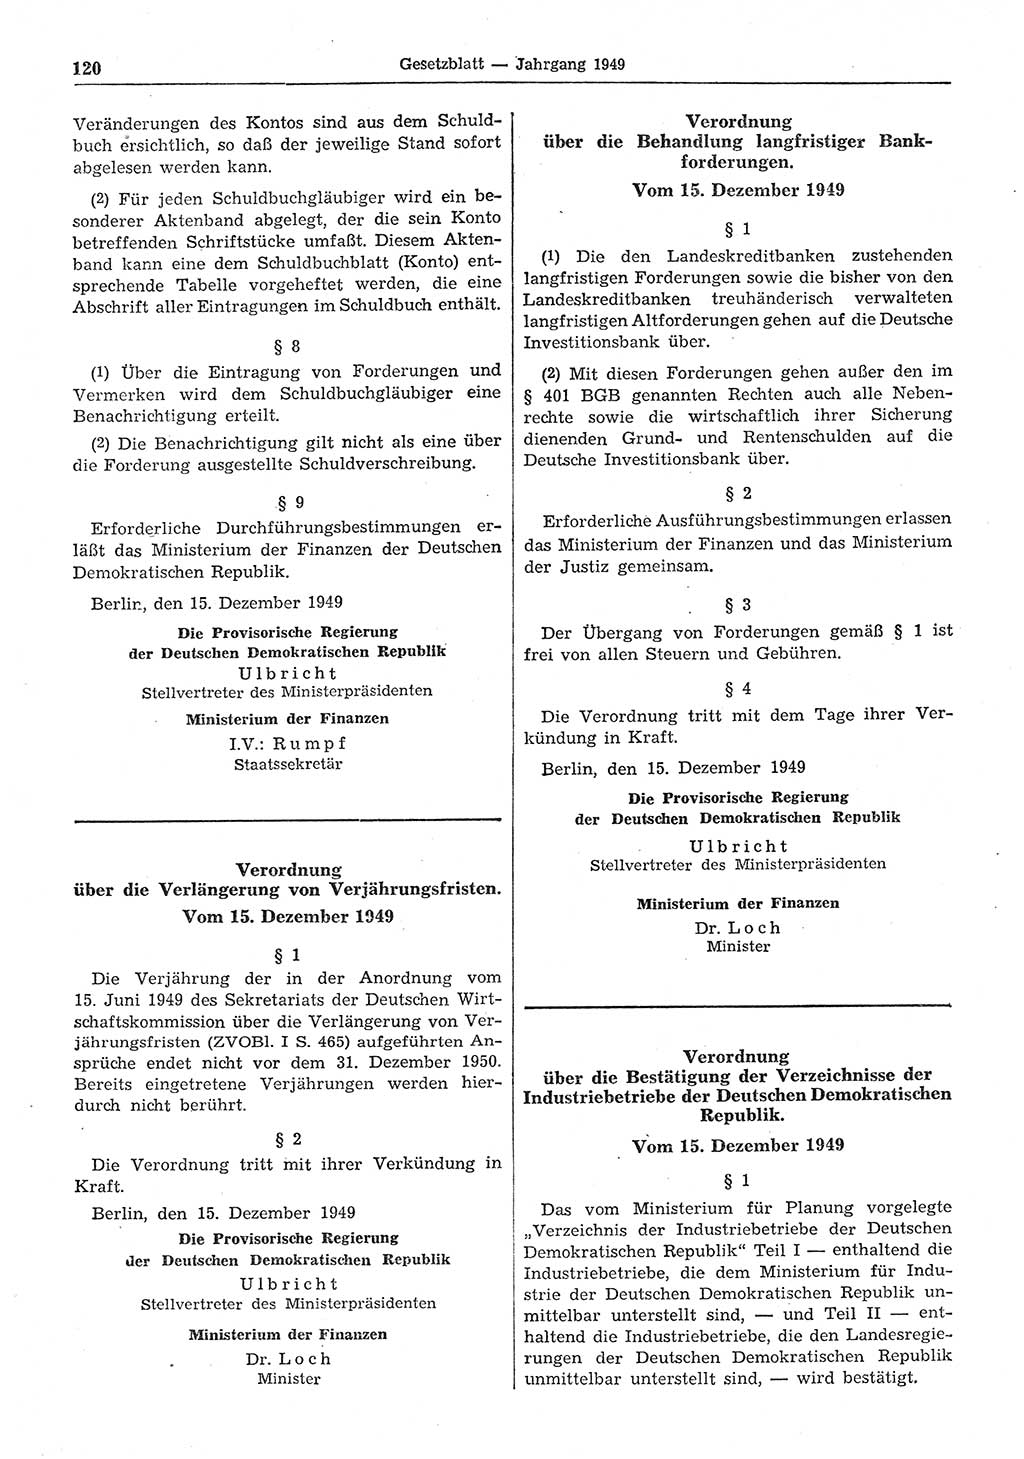 Gesetzblatt (GBl.) der Deutschen Demokratischen Republik (DDR) 1949, Seite 120 (GBl. DDR 1949, S. 120)